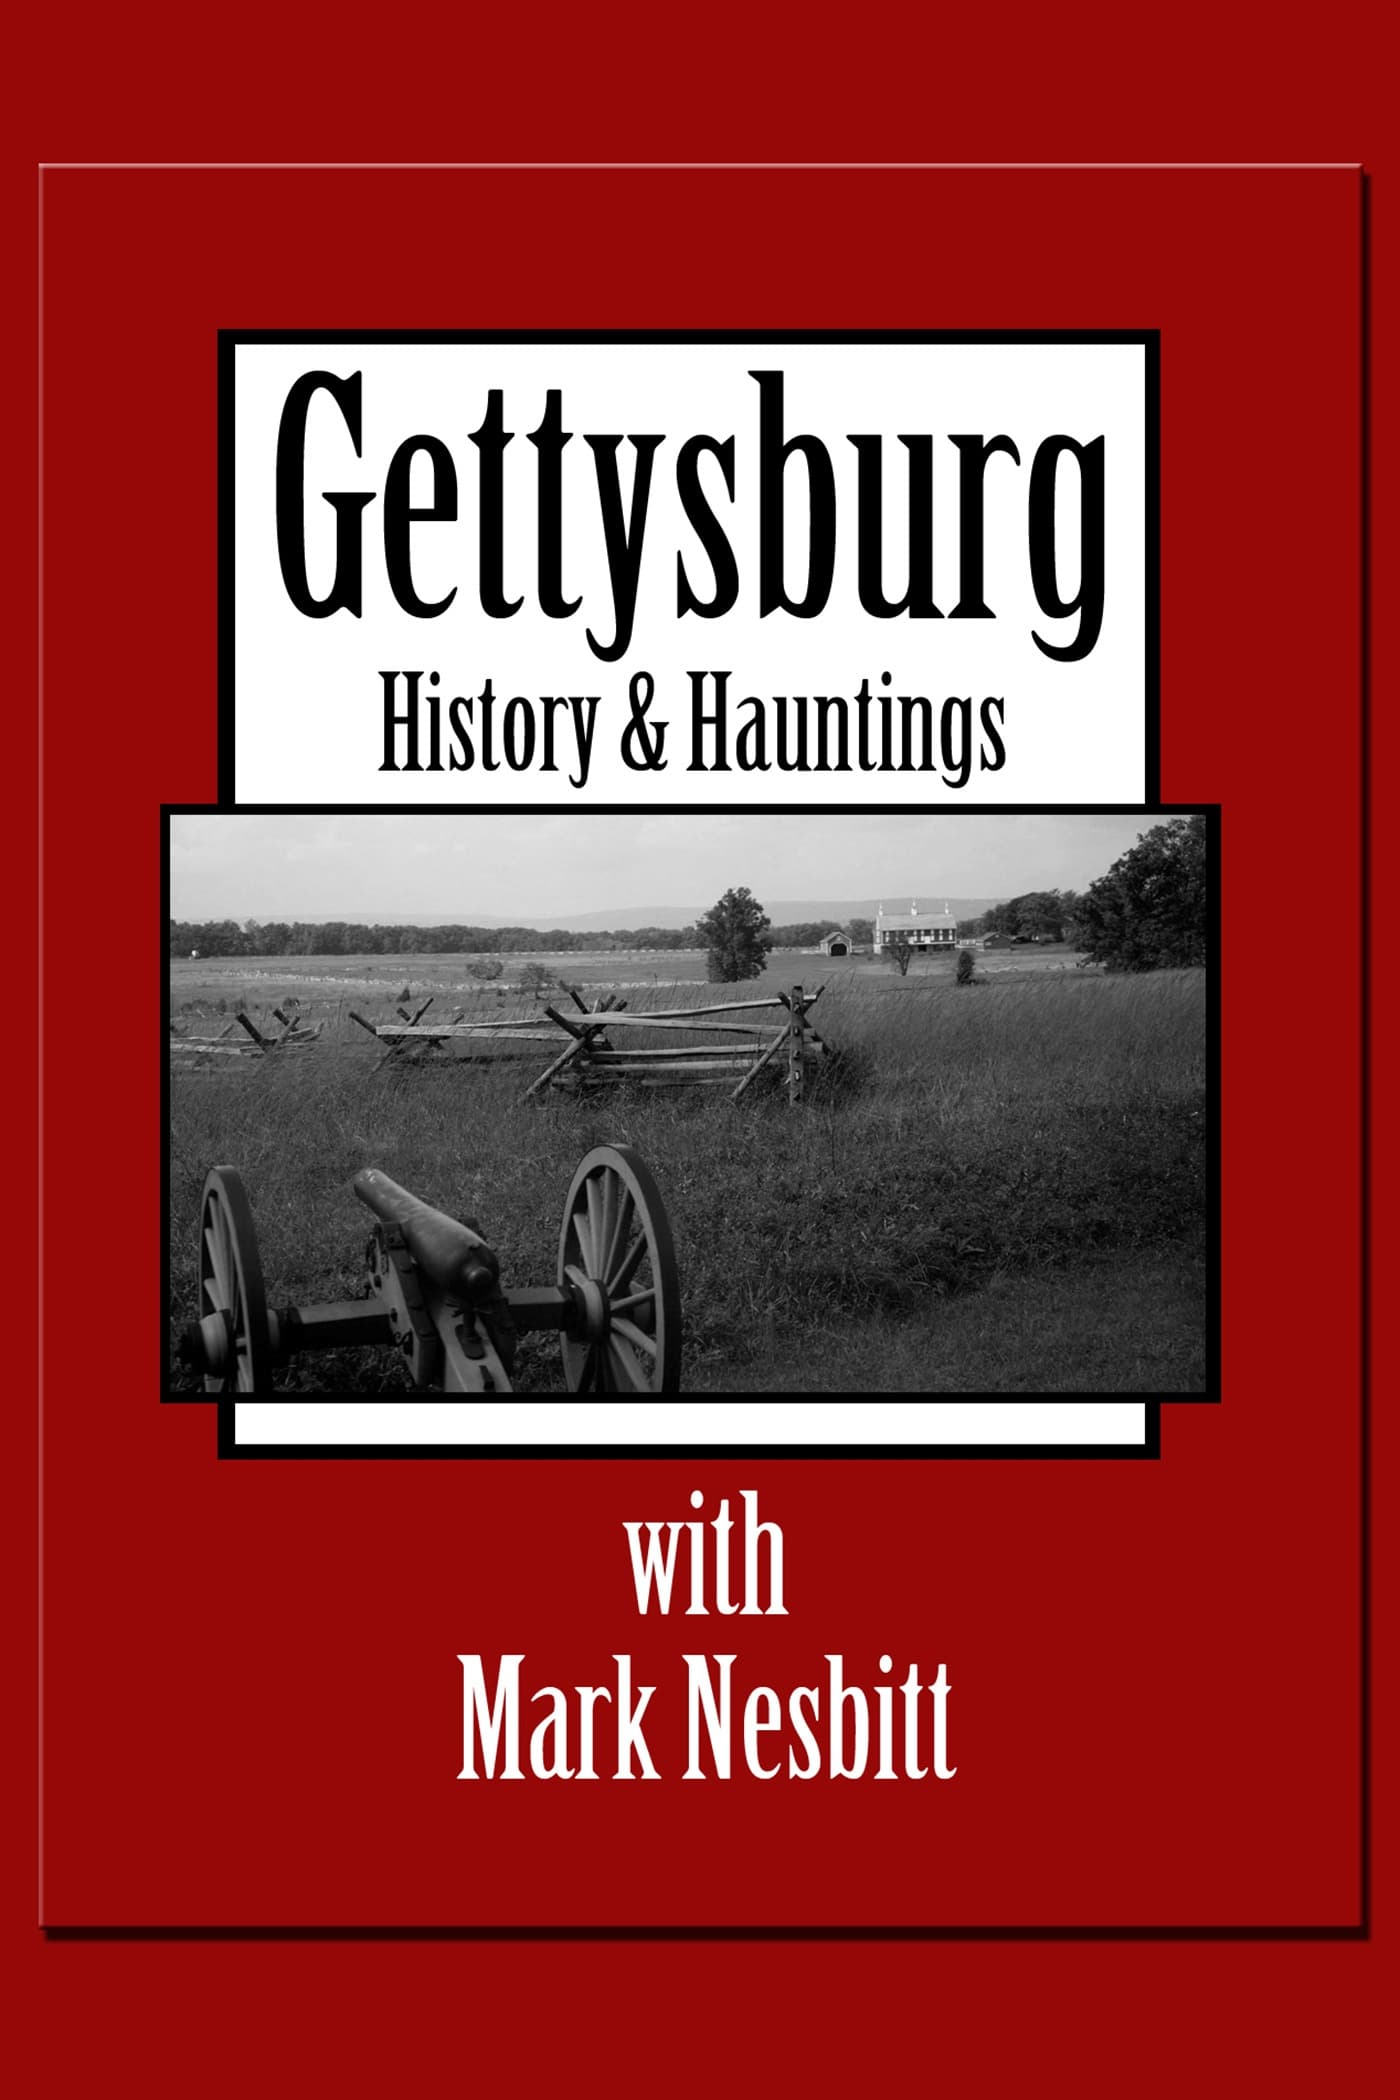 Gettysburg History & Hauntings with Mark Nesbitt